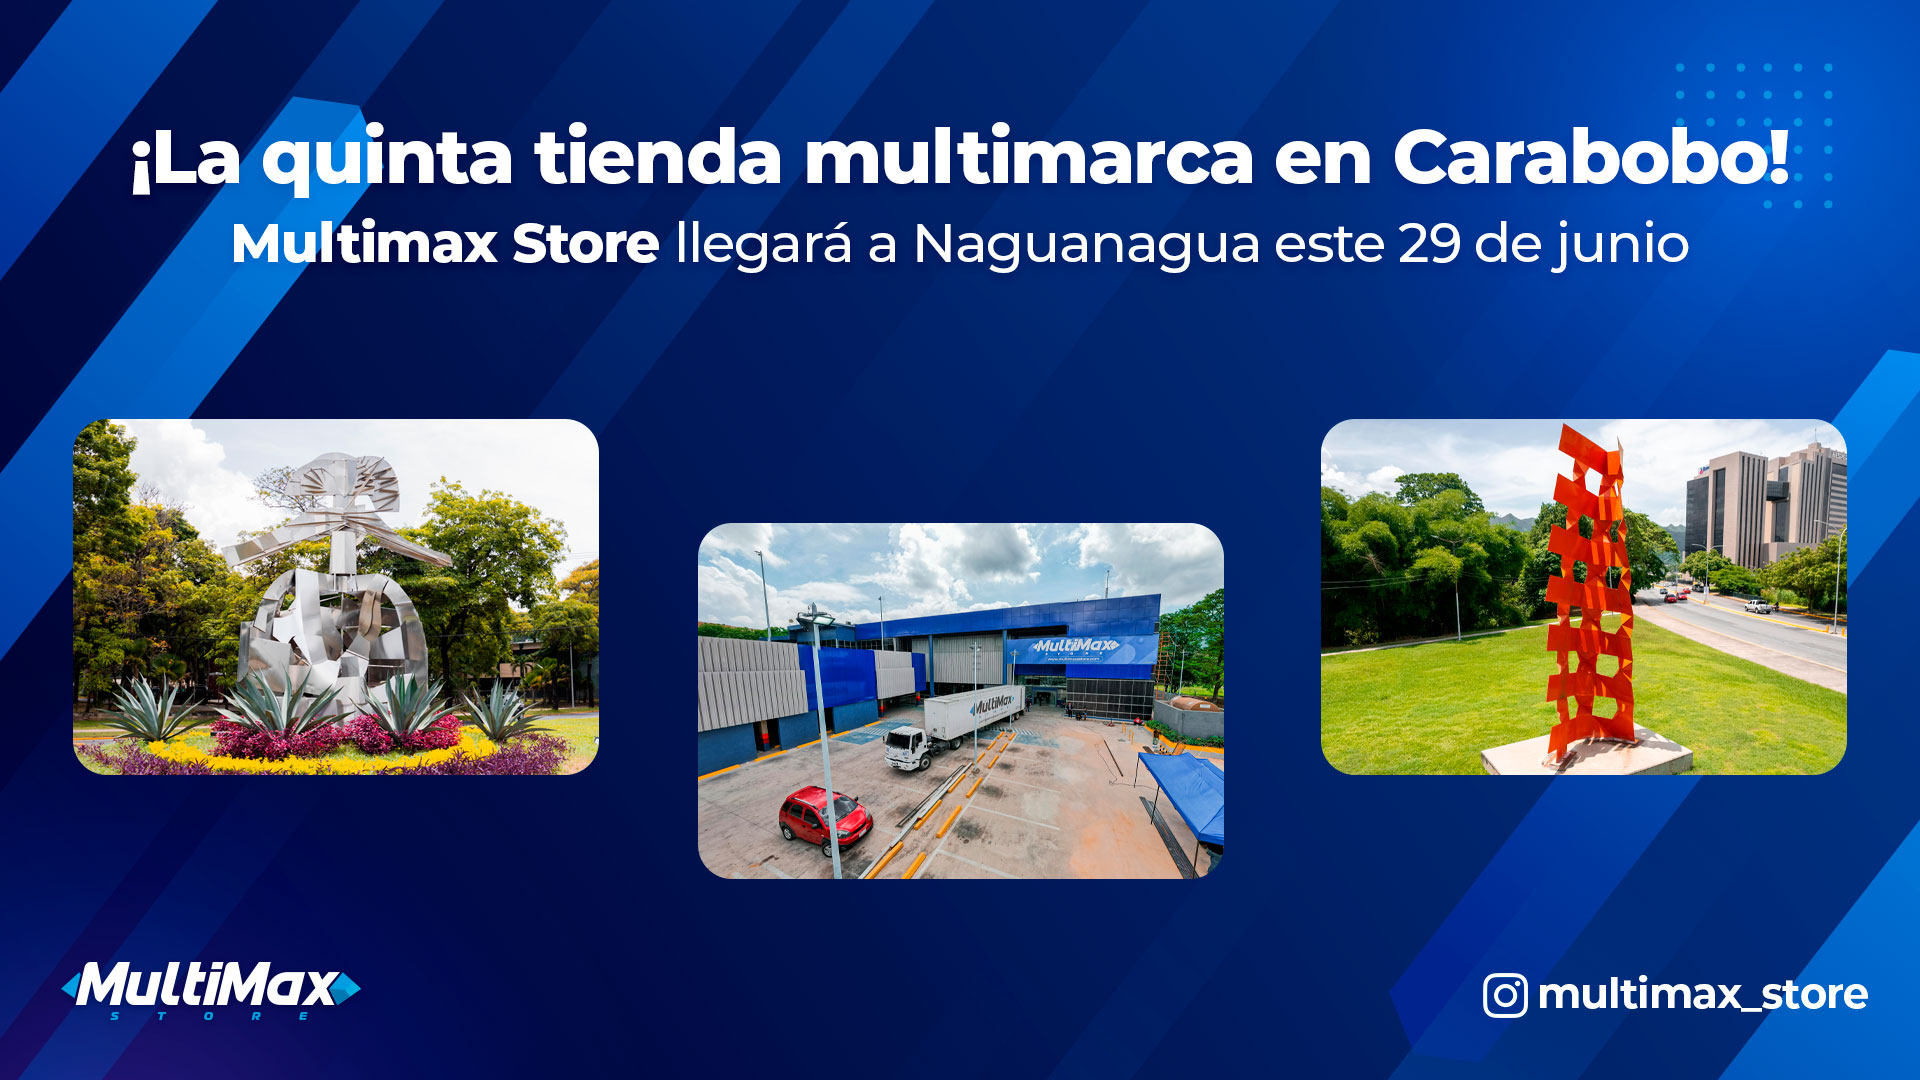 ¡La quinta tienda multimarca en Carabobo! Multimax Store llegará a Naguanagua este 29 de junio